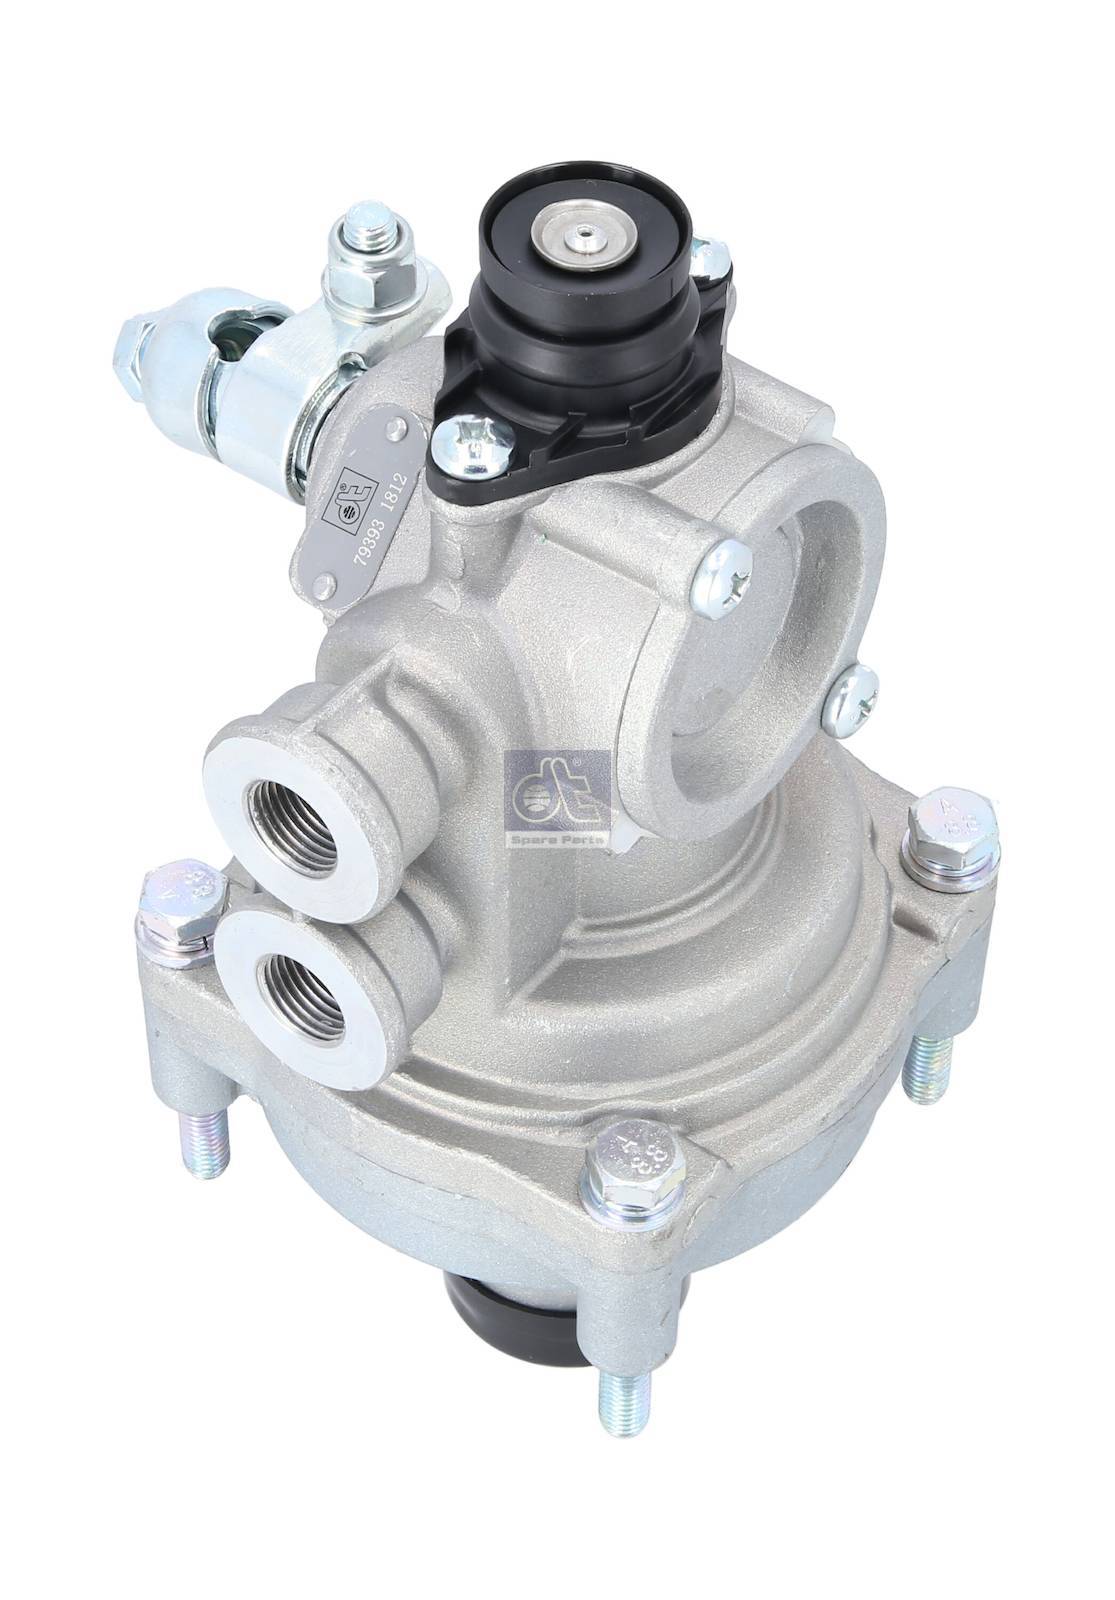 Load sensitive valve DT Spare Parts 2.47039